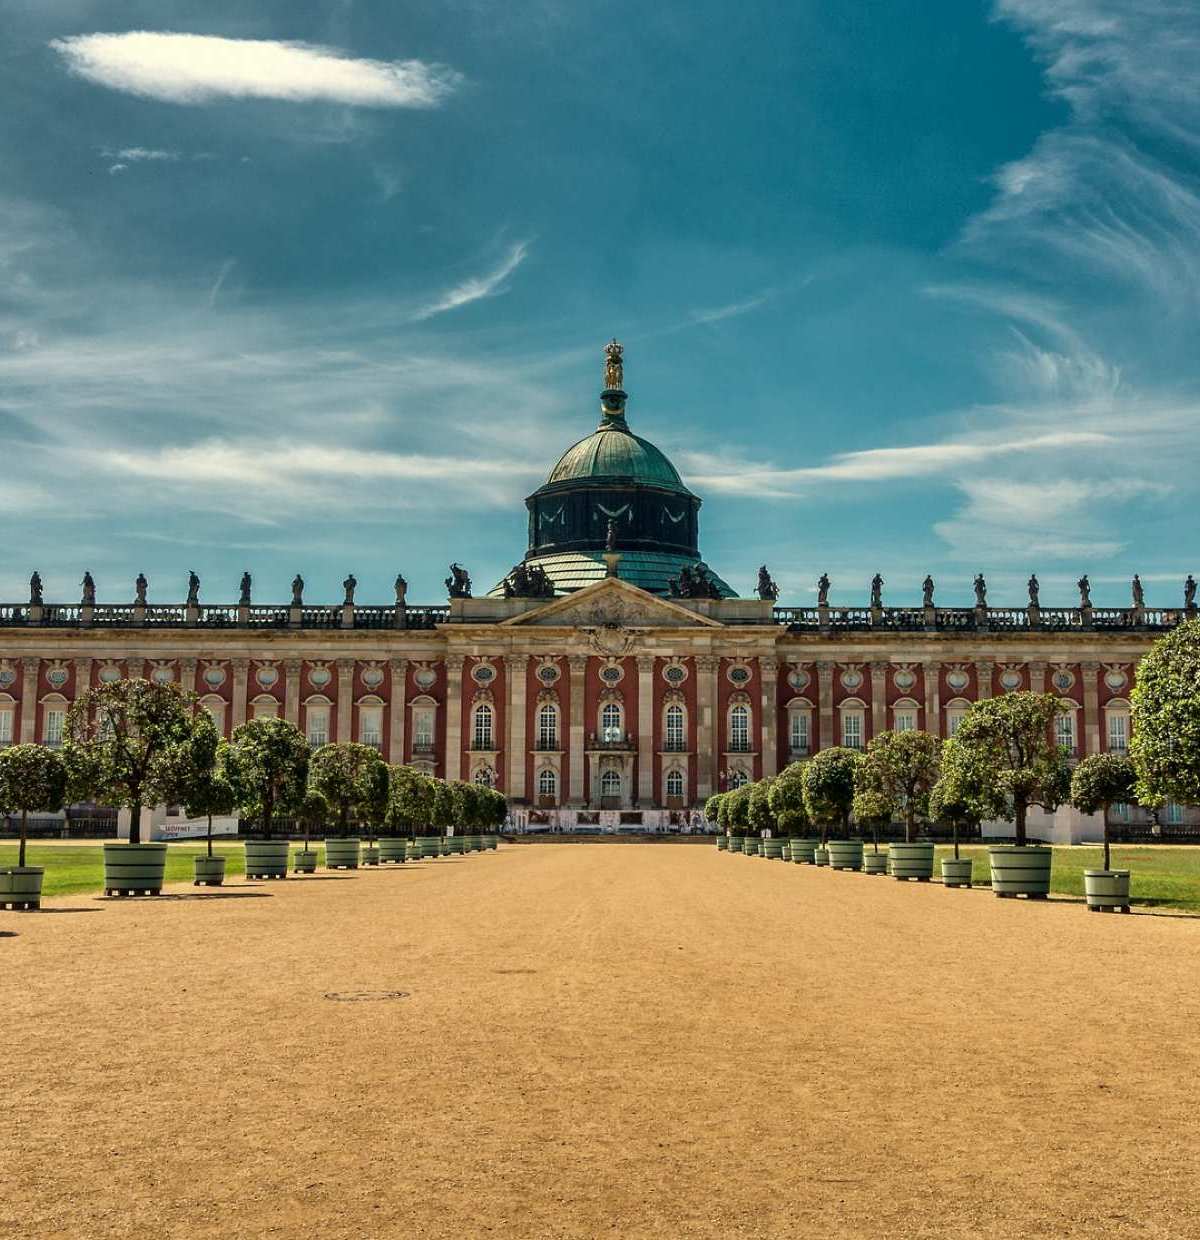 Majestätischer Besuchermagnet: Das 1769 fertiggestellte Neue Palais liegt im Park Sanssouci und gilt als letzte bedeutende Schlossanlage des Barocks in Preussen.